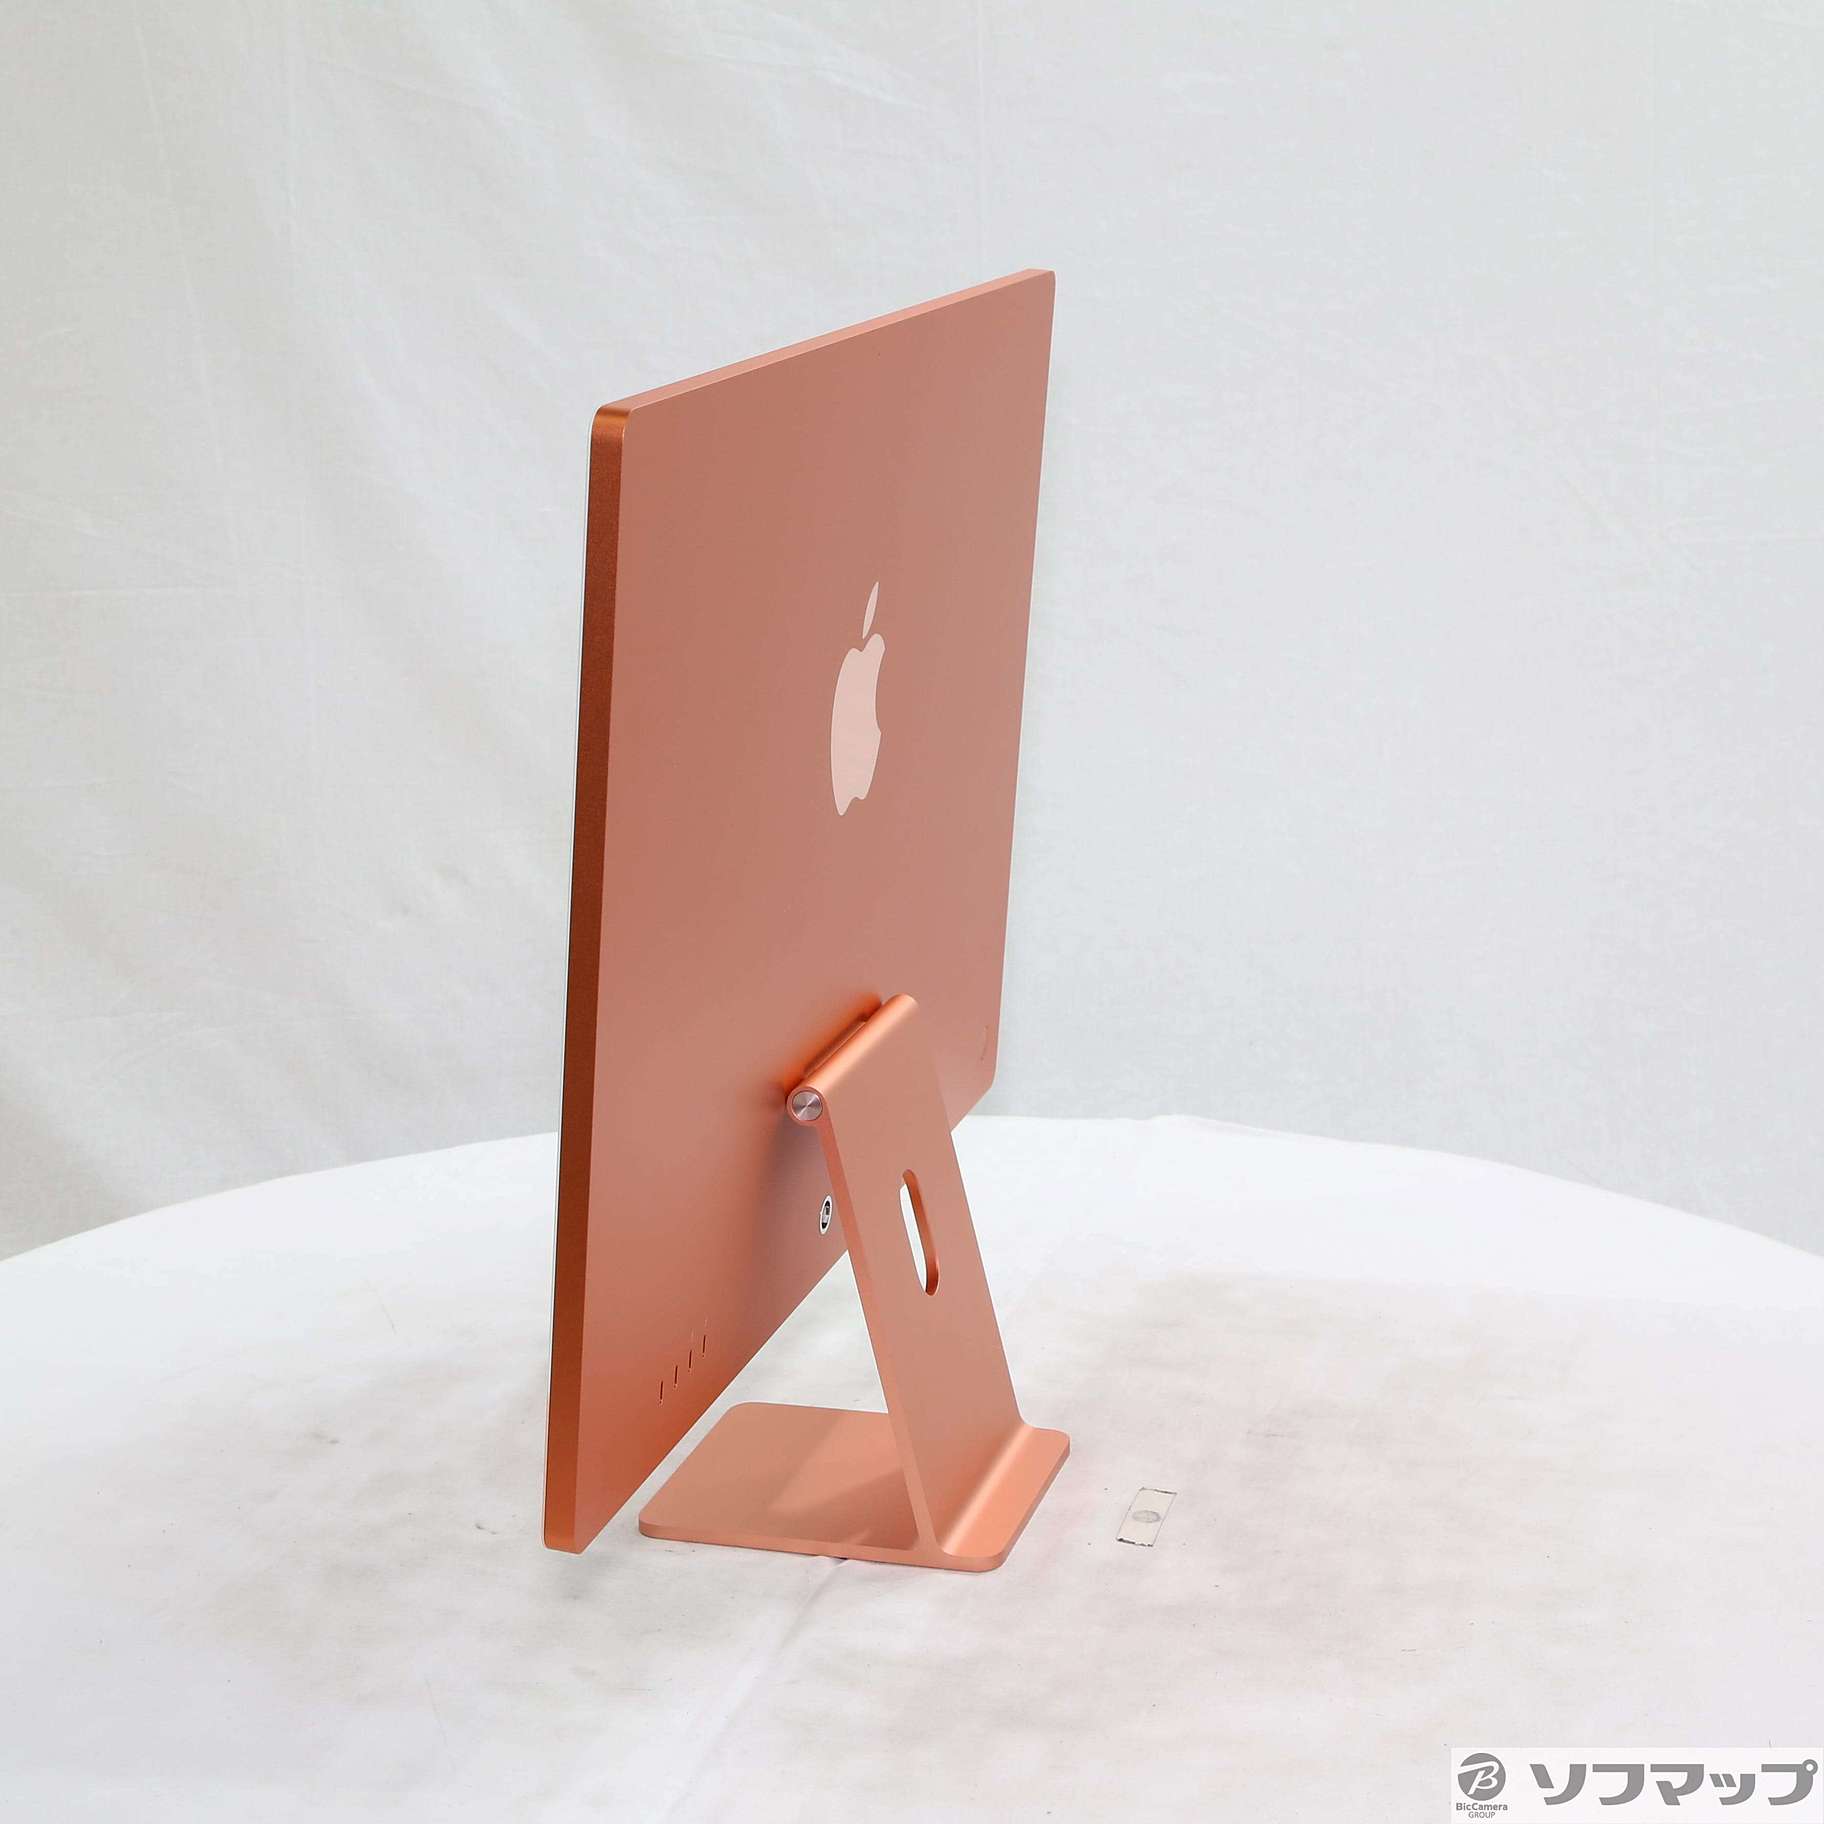 〔展示品〕 iMac 24-inch Mid 2021 Z132 Apple M1 8コアCPU_8コアGPU 8GB SSD256GB オレンジ  〔13.6 Ventura〕